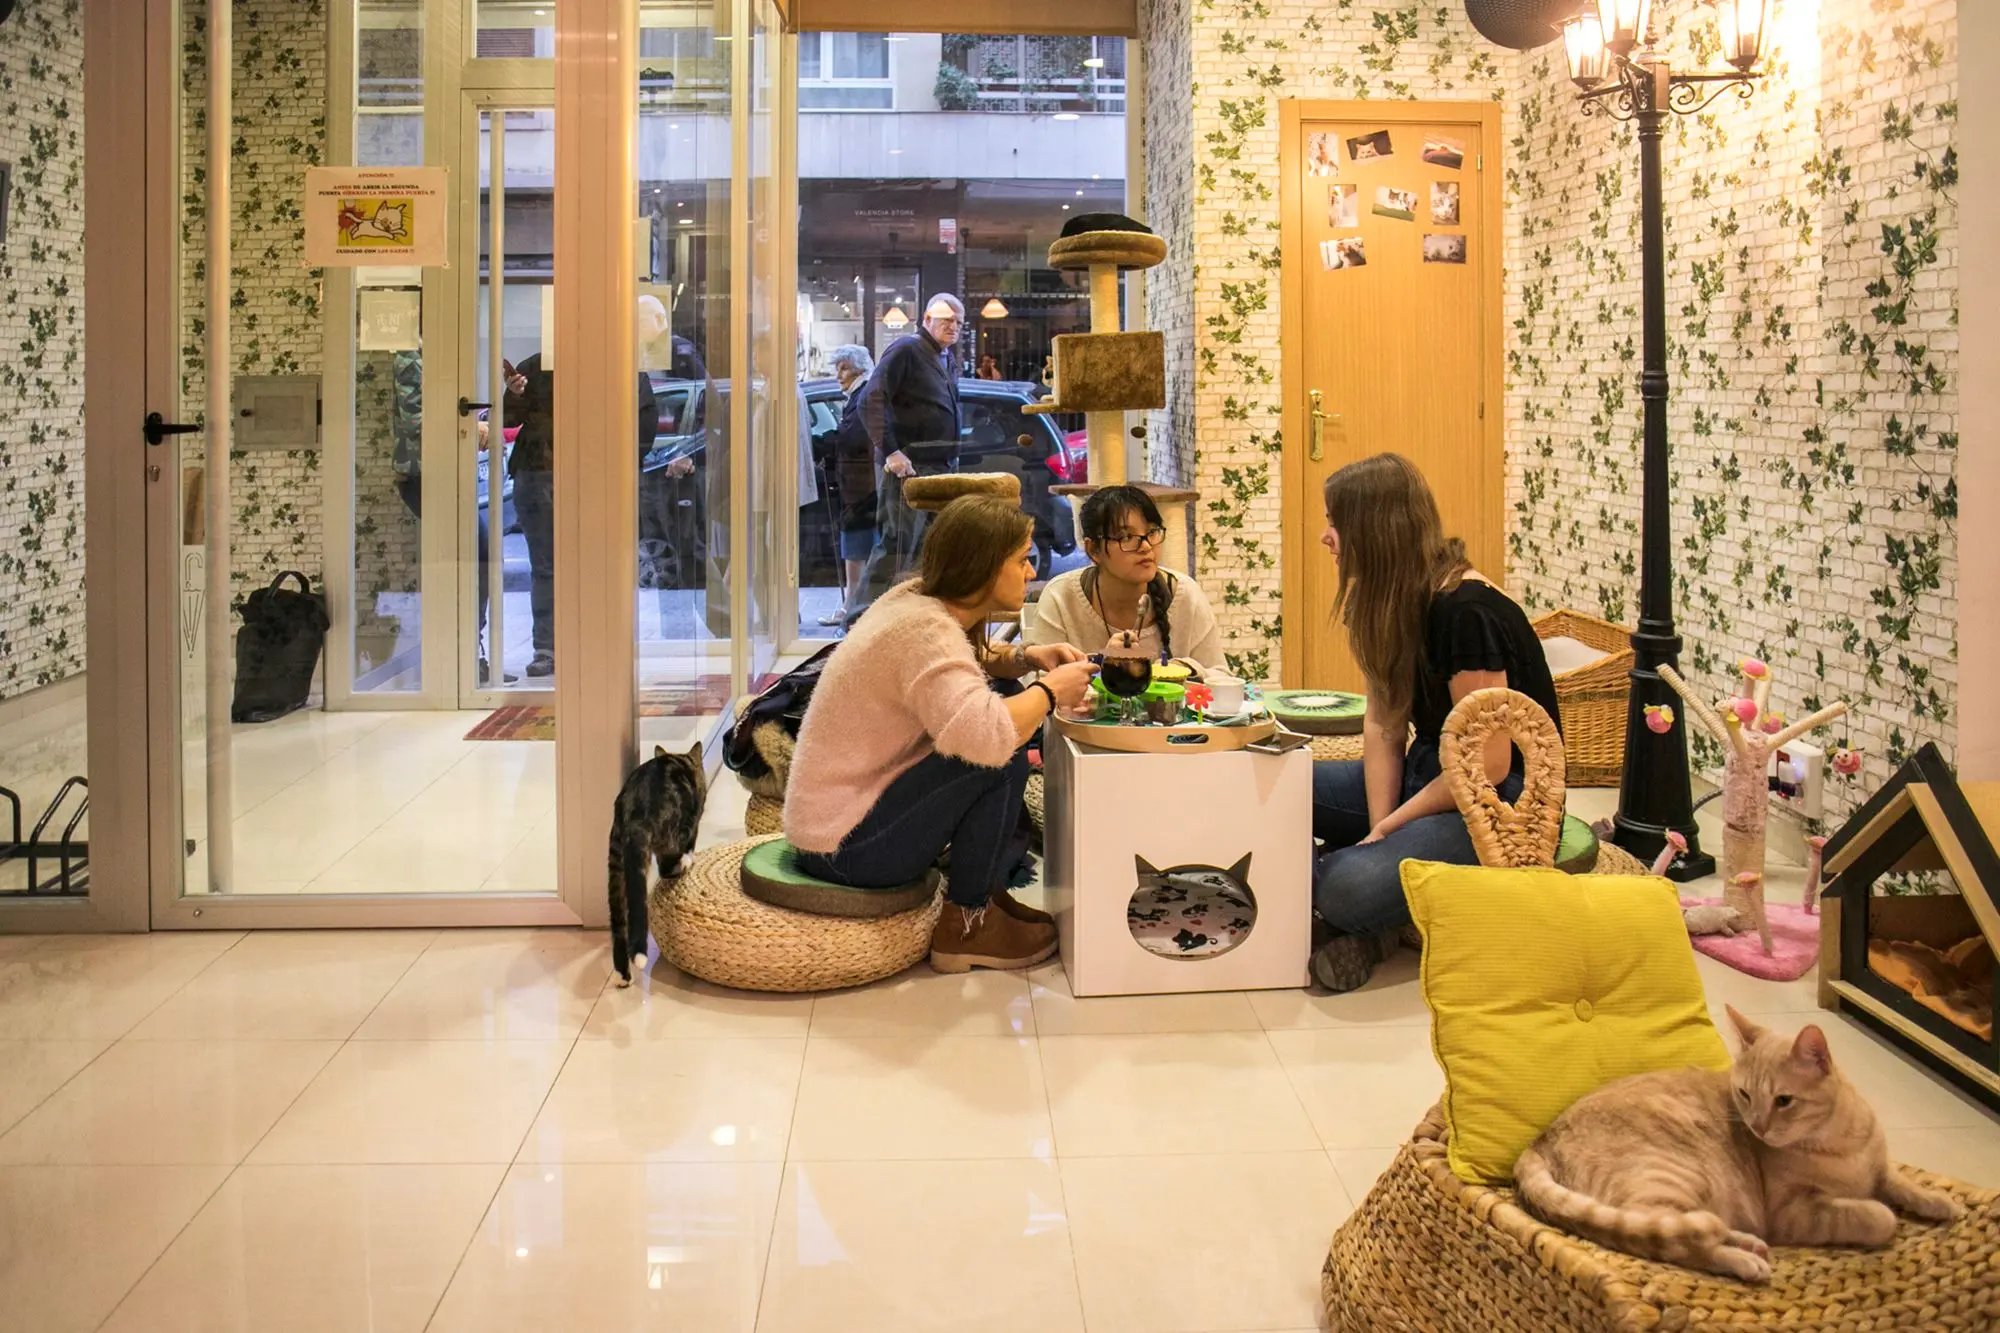 El passatge dels gats - Las cafeterías más originales de Valencia